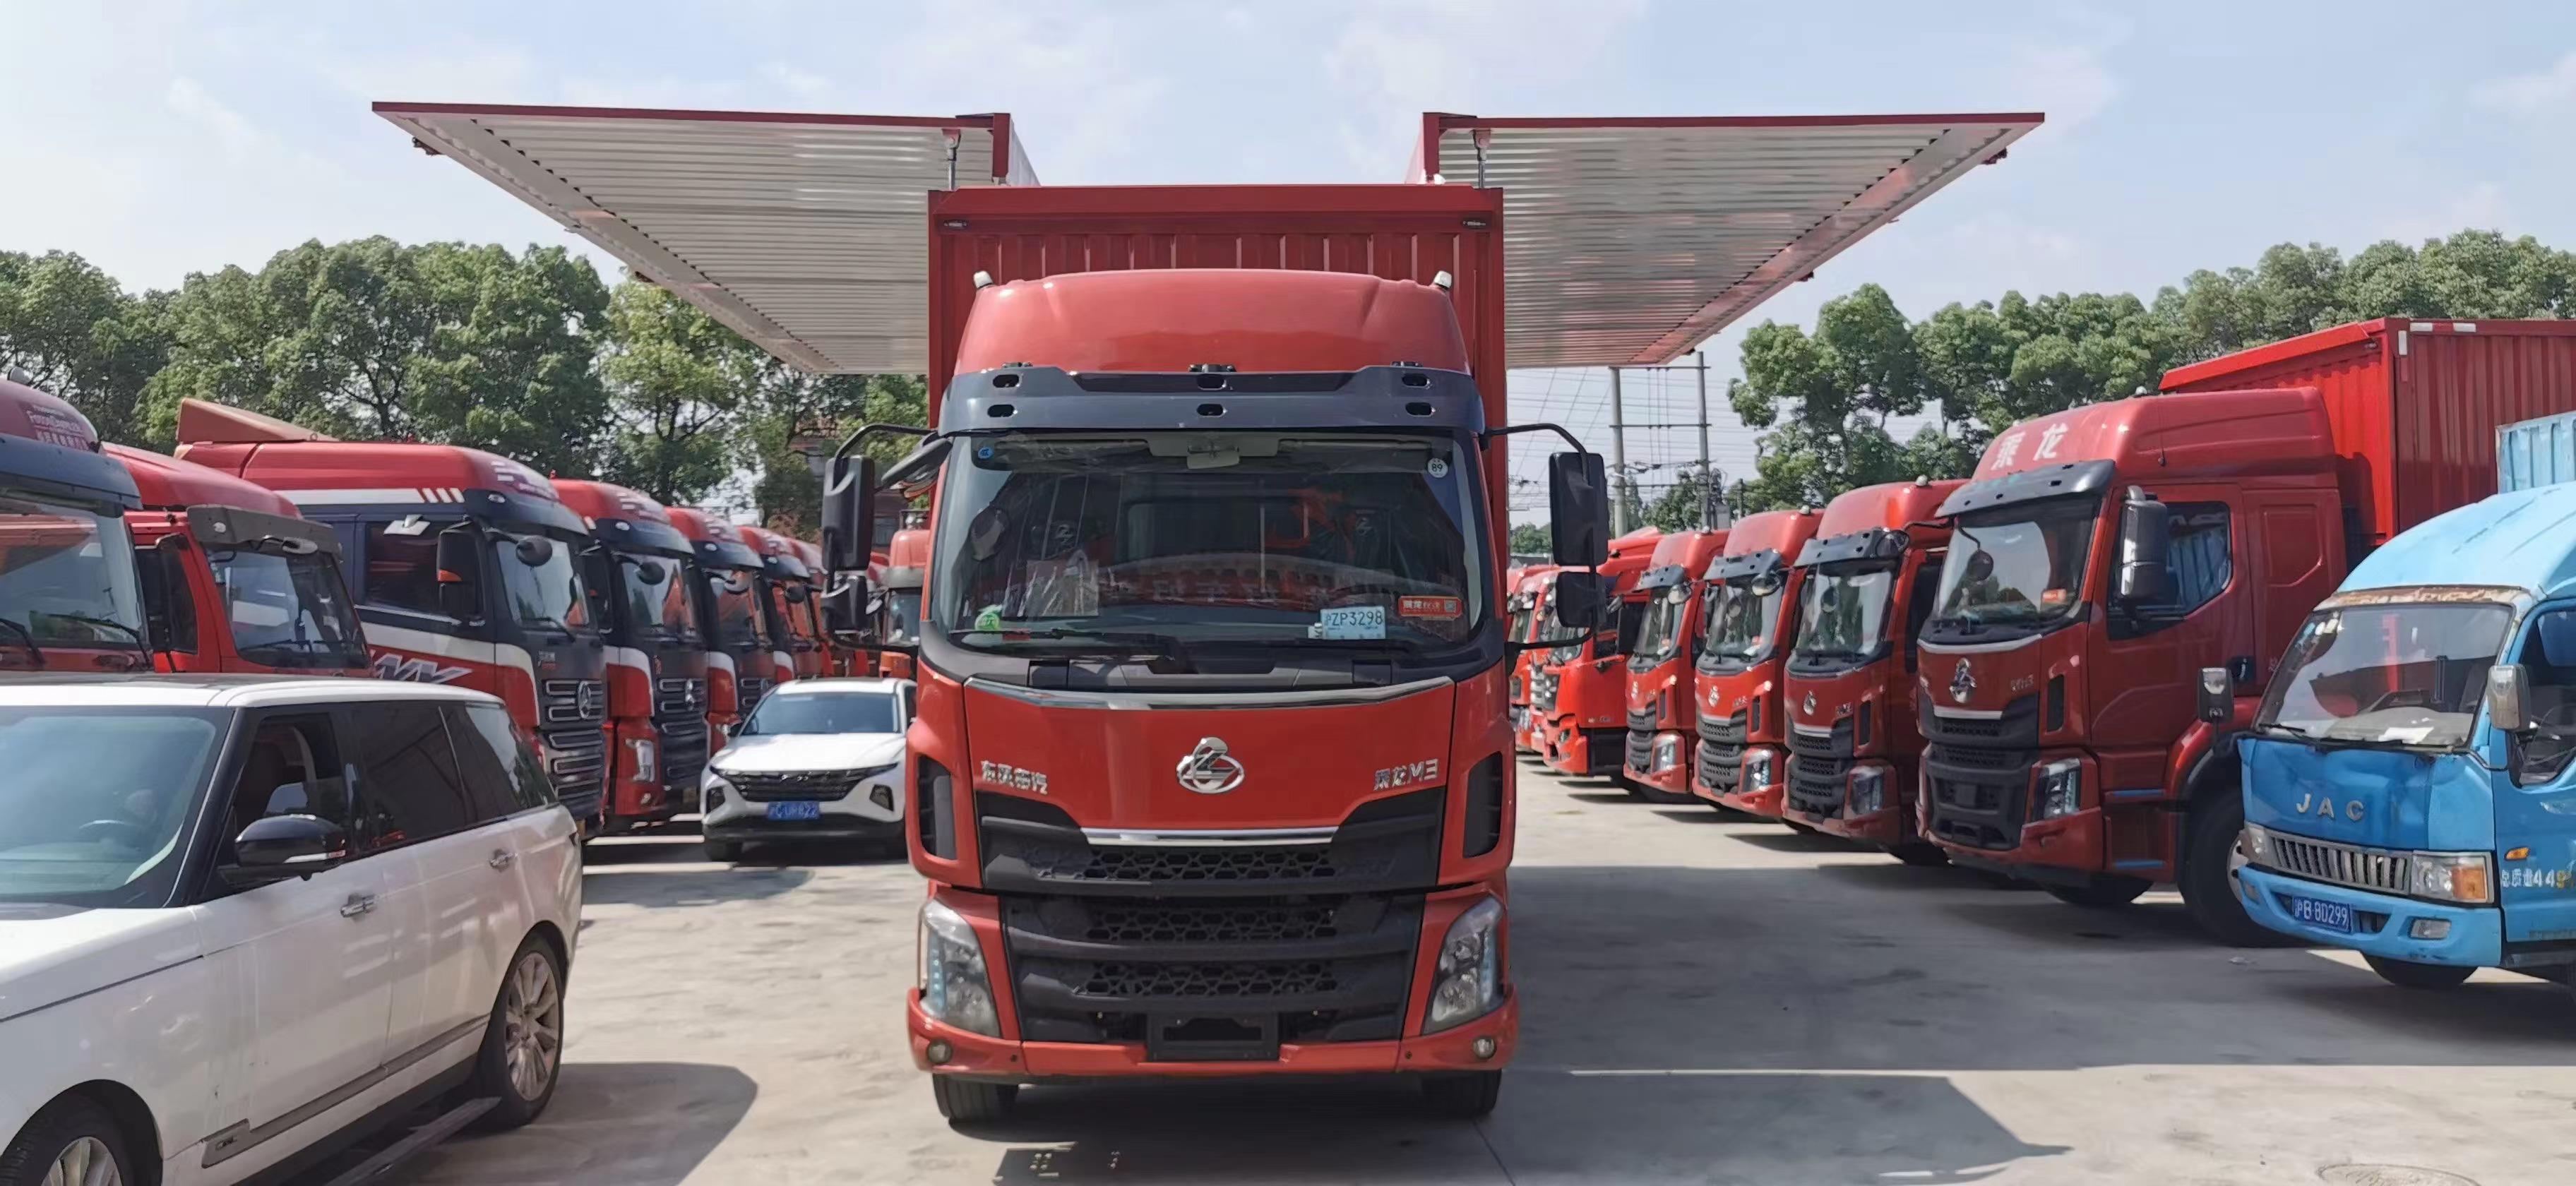 8米3载货车批发上海青浦销售免息购车零首付分期物流运输